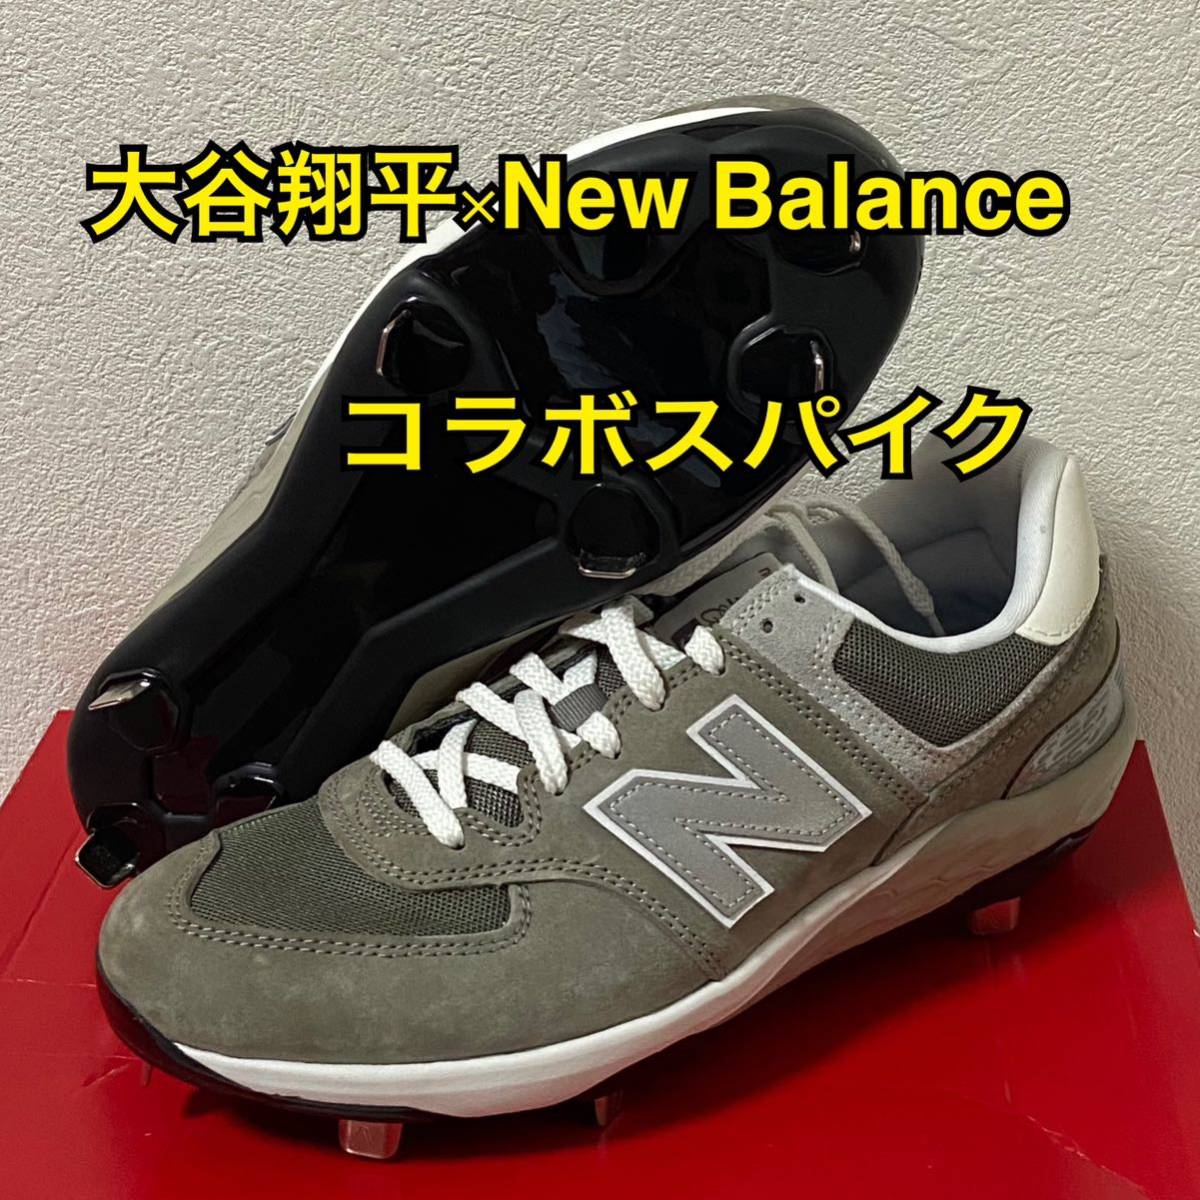 新品 New Balance Fresh Foam 574 Metal 大谷コラボモデル スパイク グレー 26.5cm 大谷翔平 ニューバランス 野球